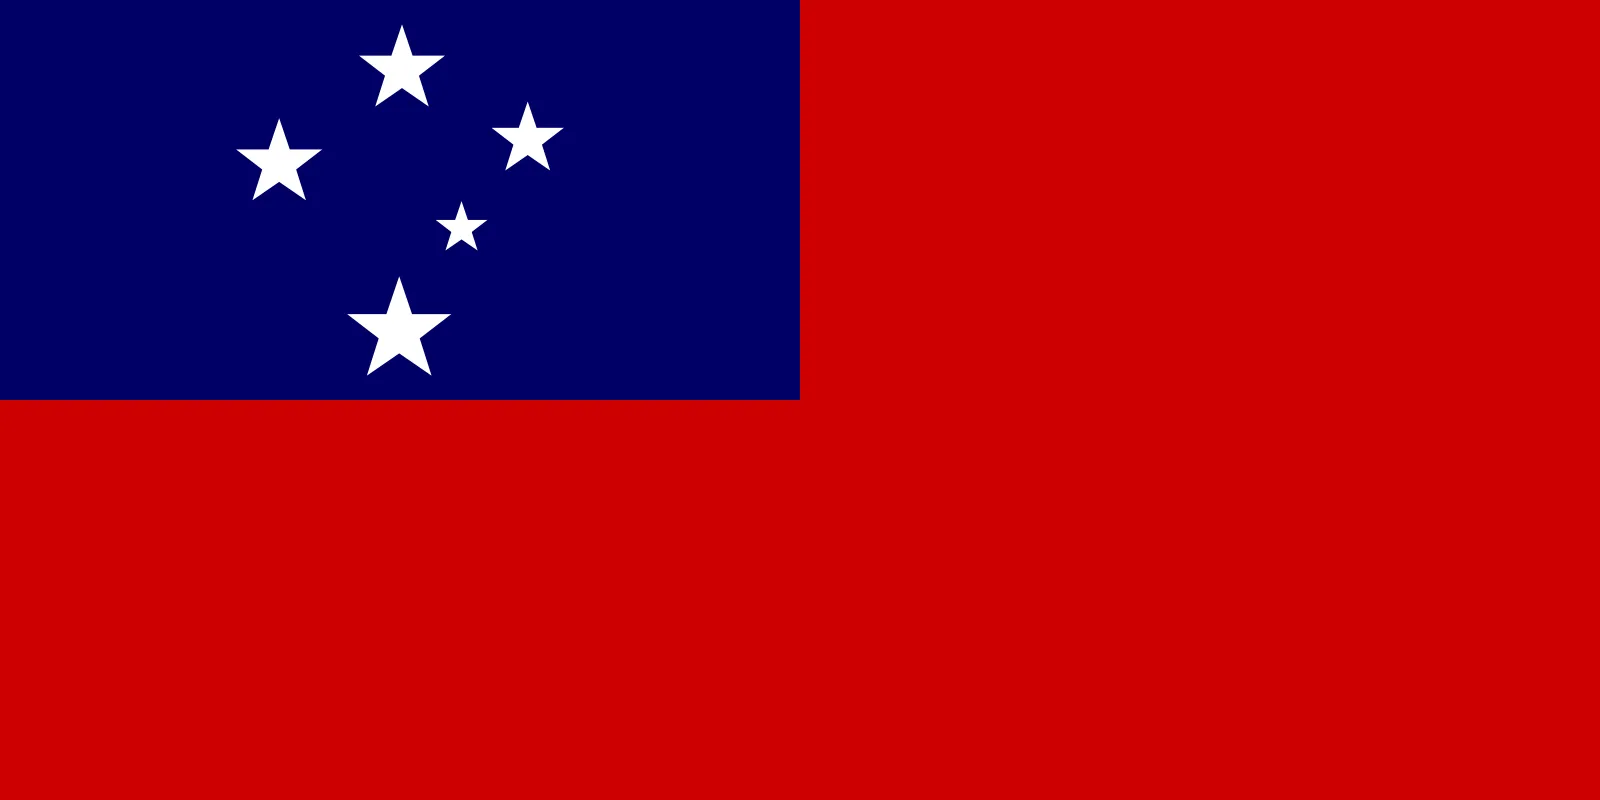 Samoa Independence Day